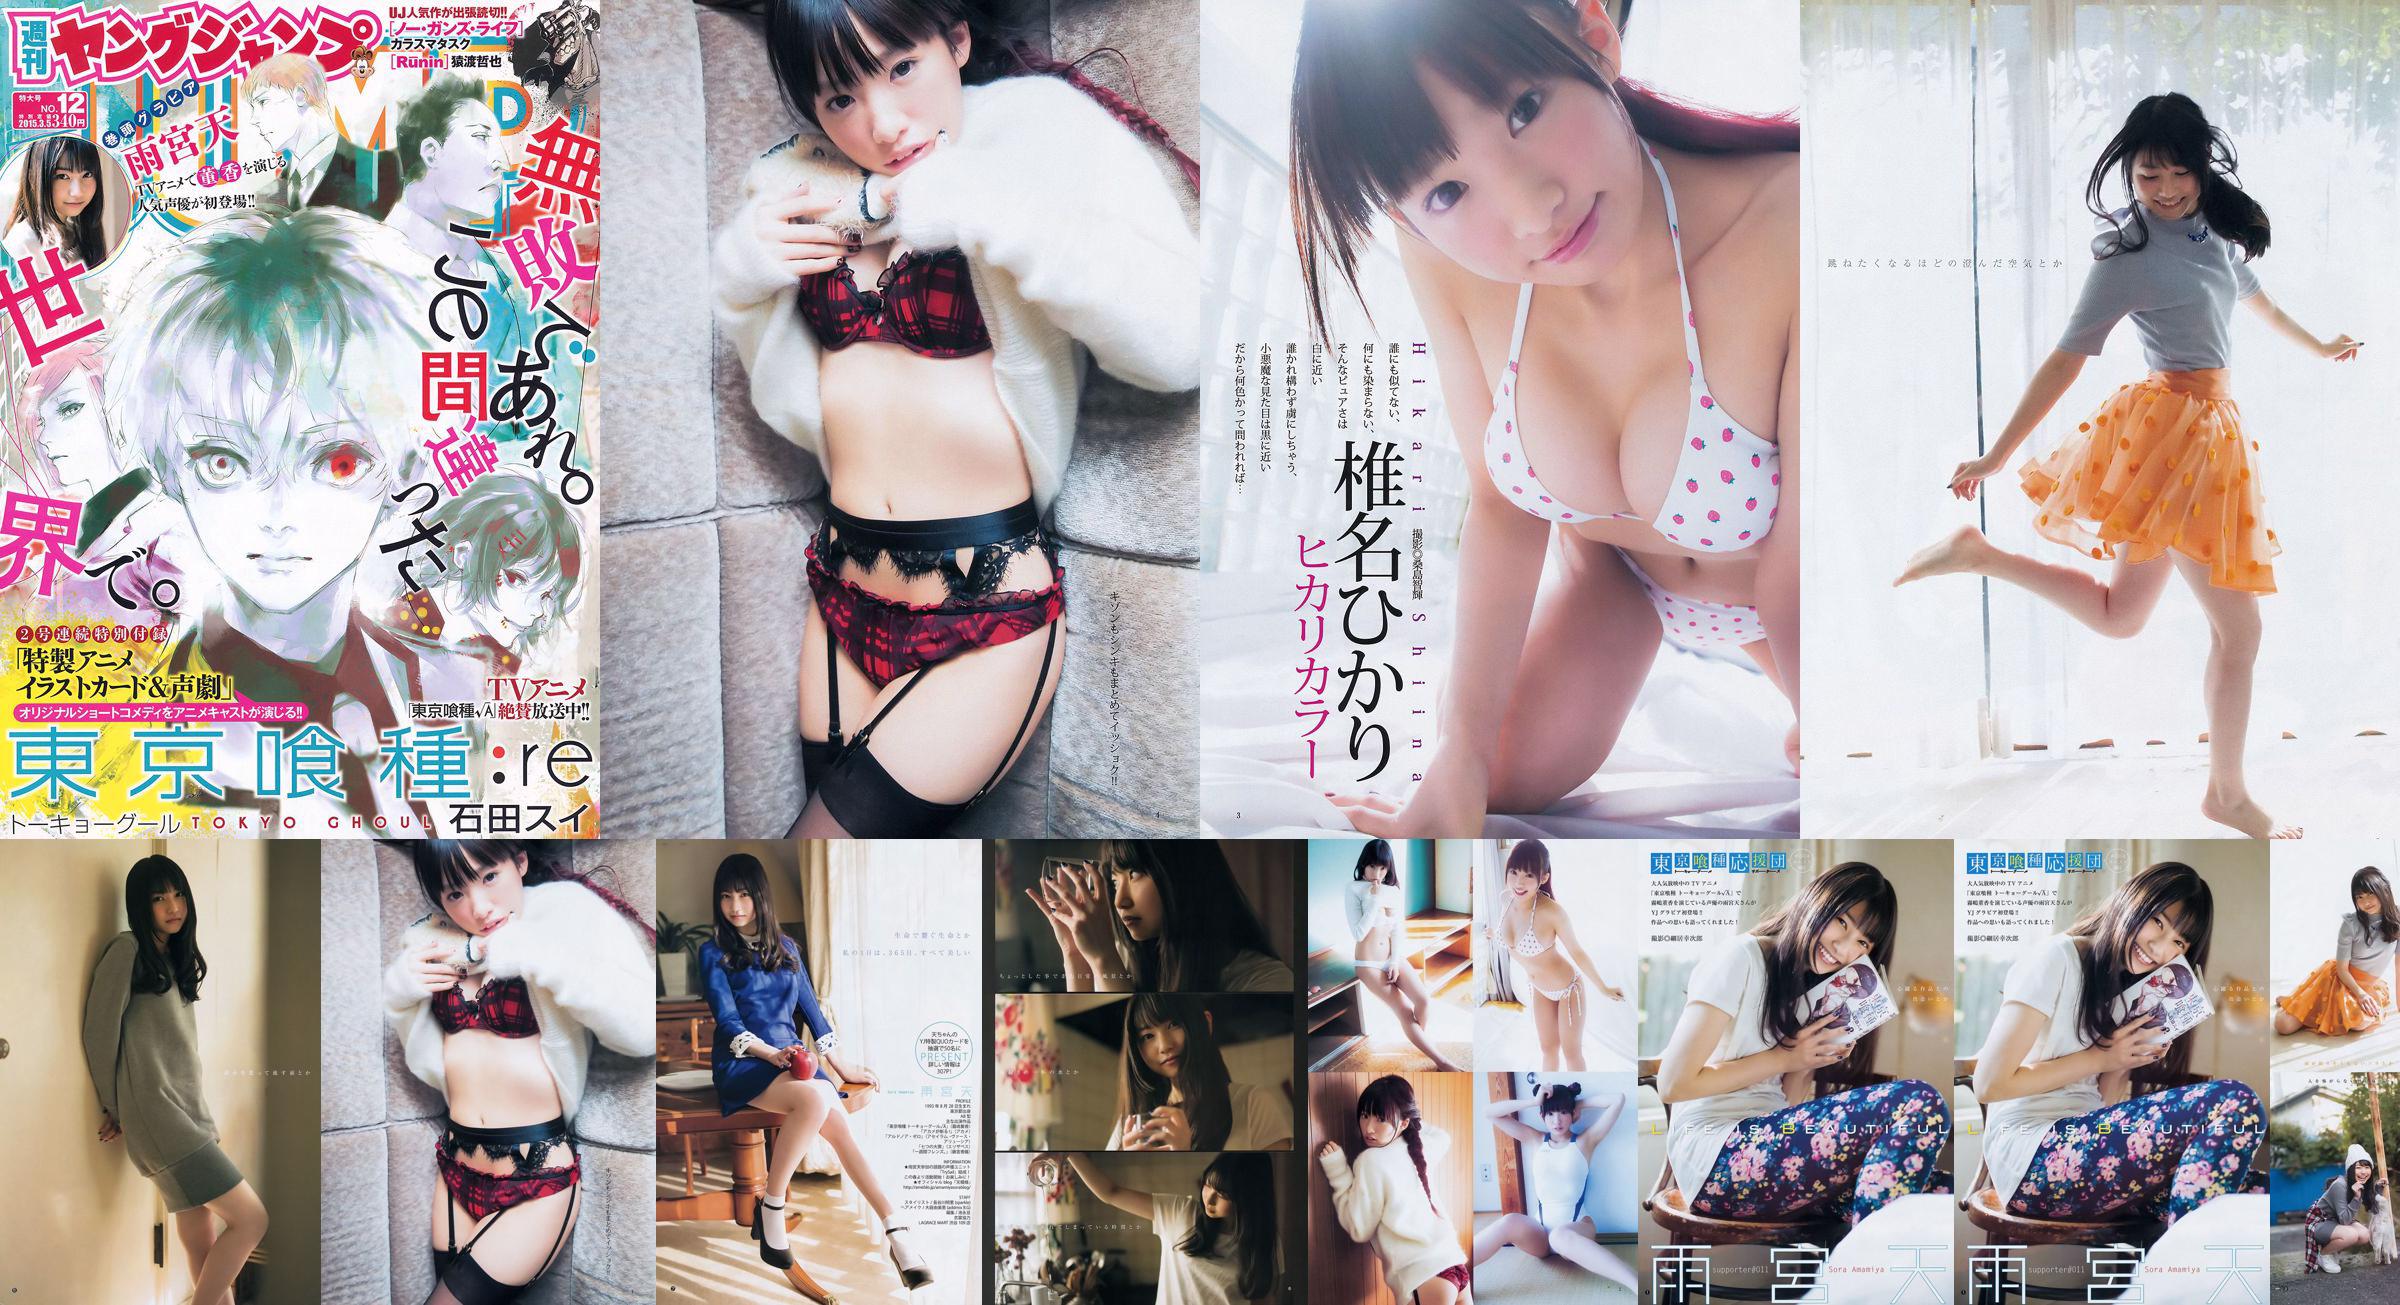 Amamiya Tian Shiina ひかり [Weekly Young Jump] 2015 No.12 Photo Magazine No.adfe78 Page 7